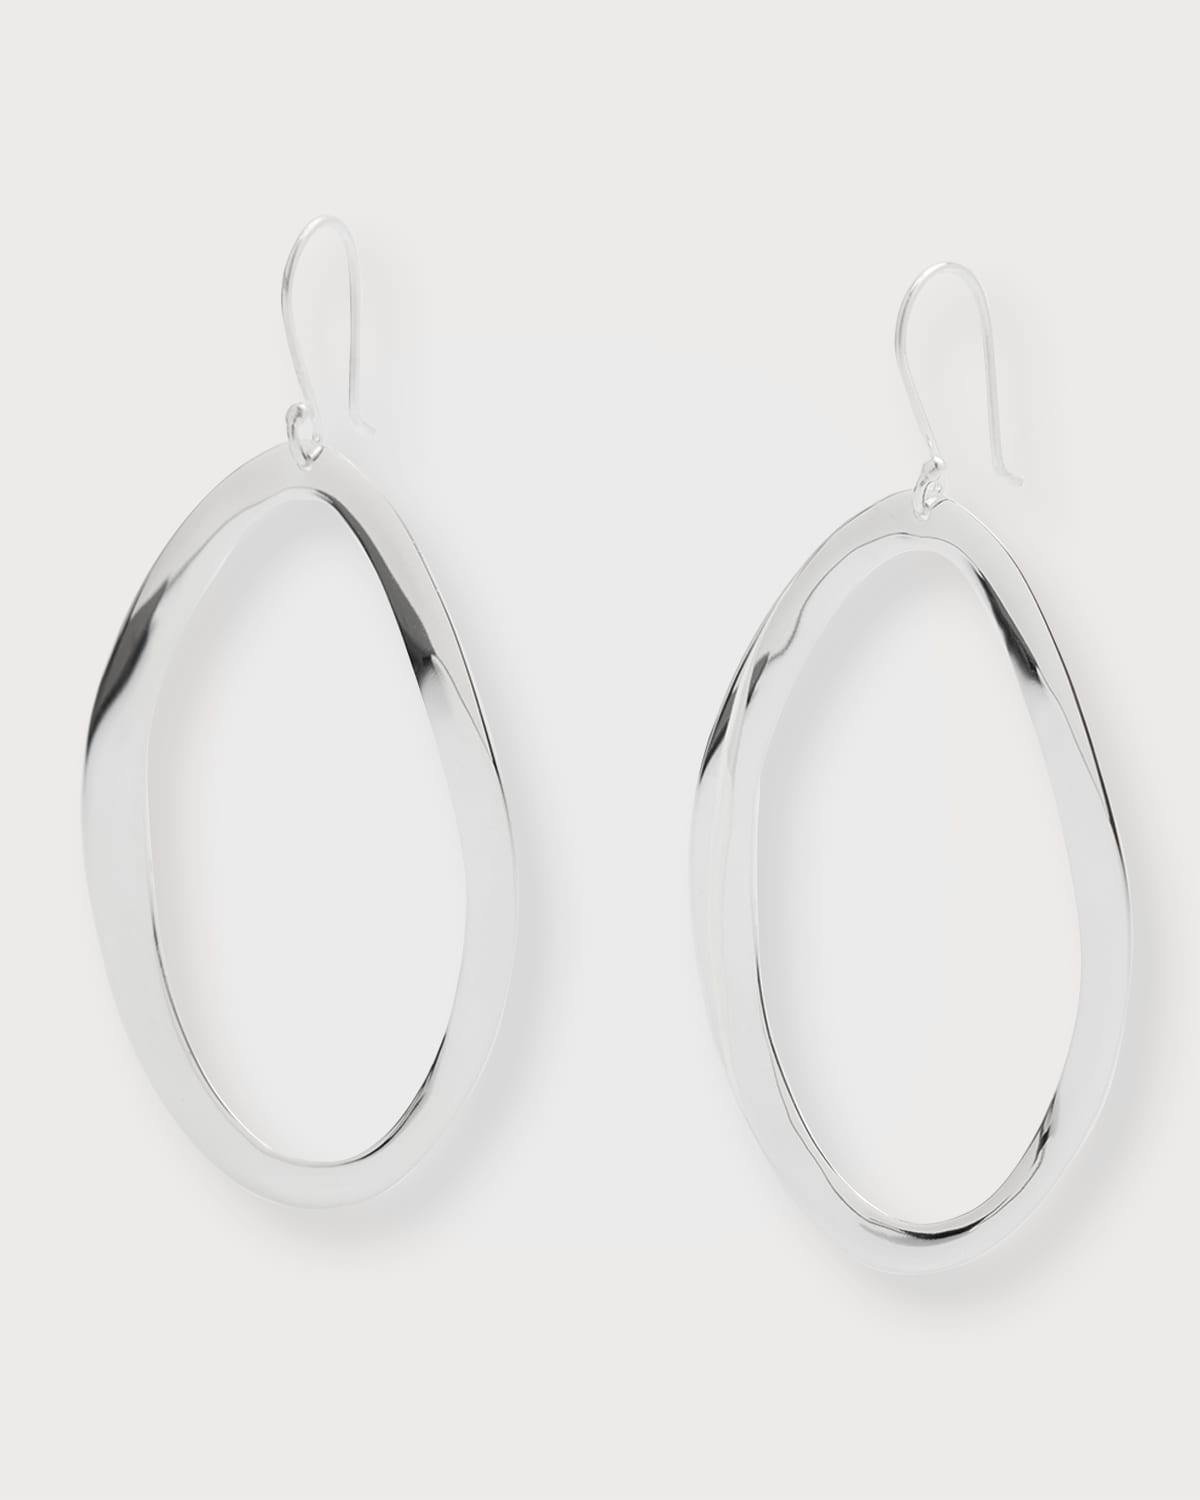 Wavy Oval Drop Earrings in Sterling Silver